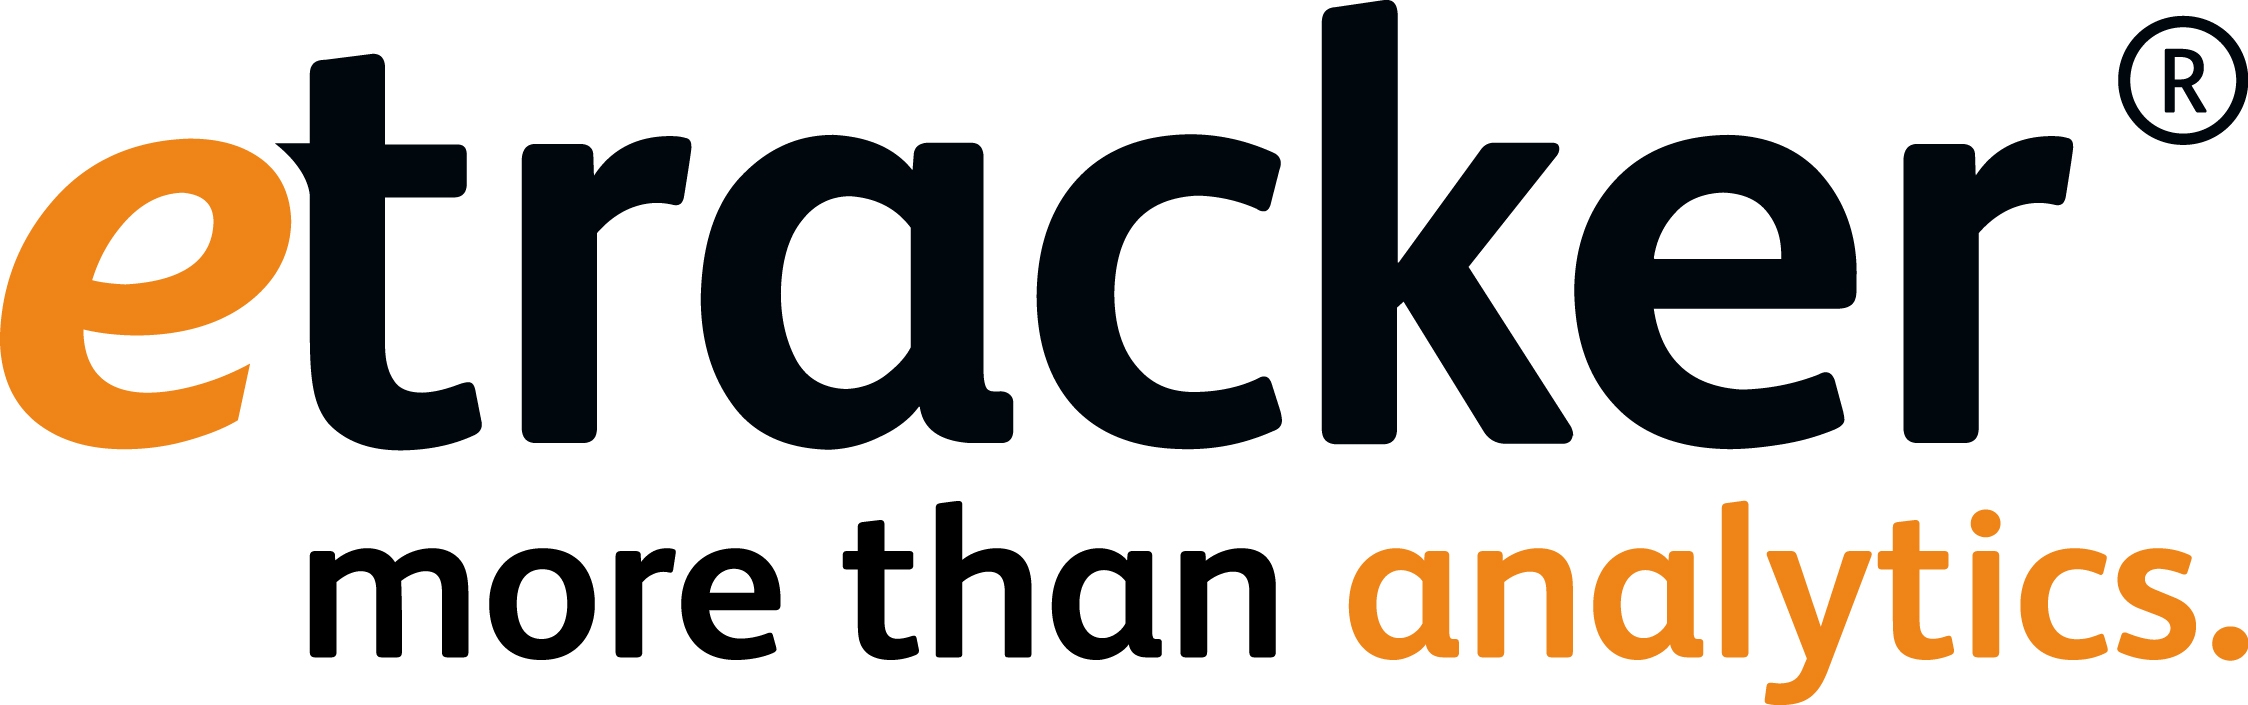 Klick-Tracking bei eTracker einrichten